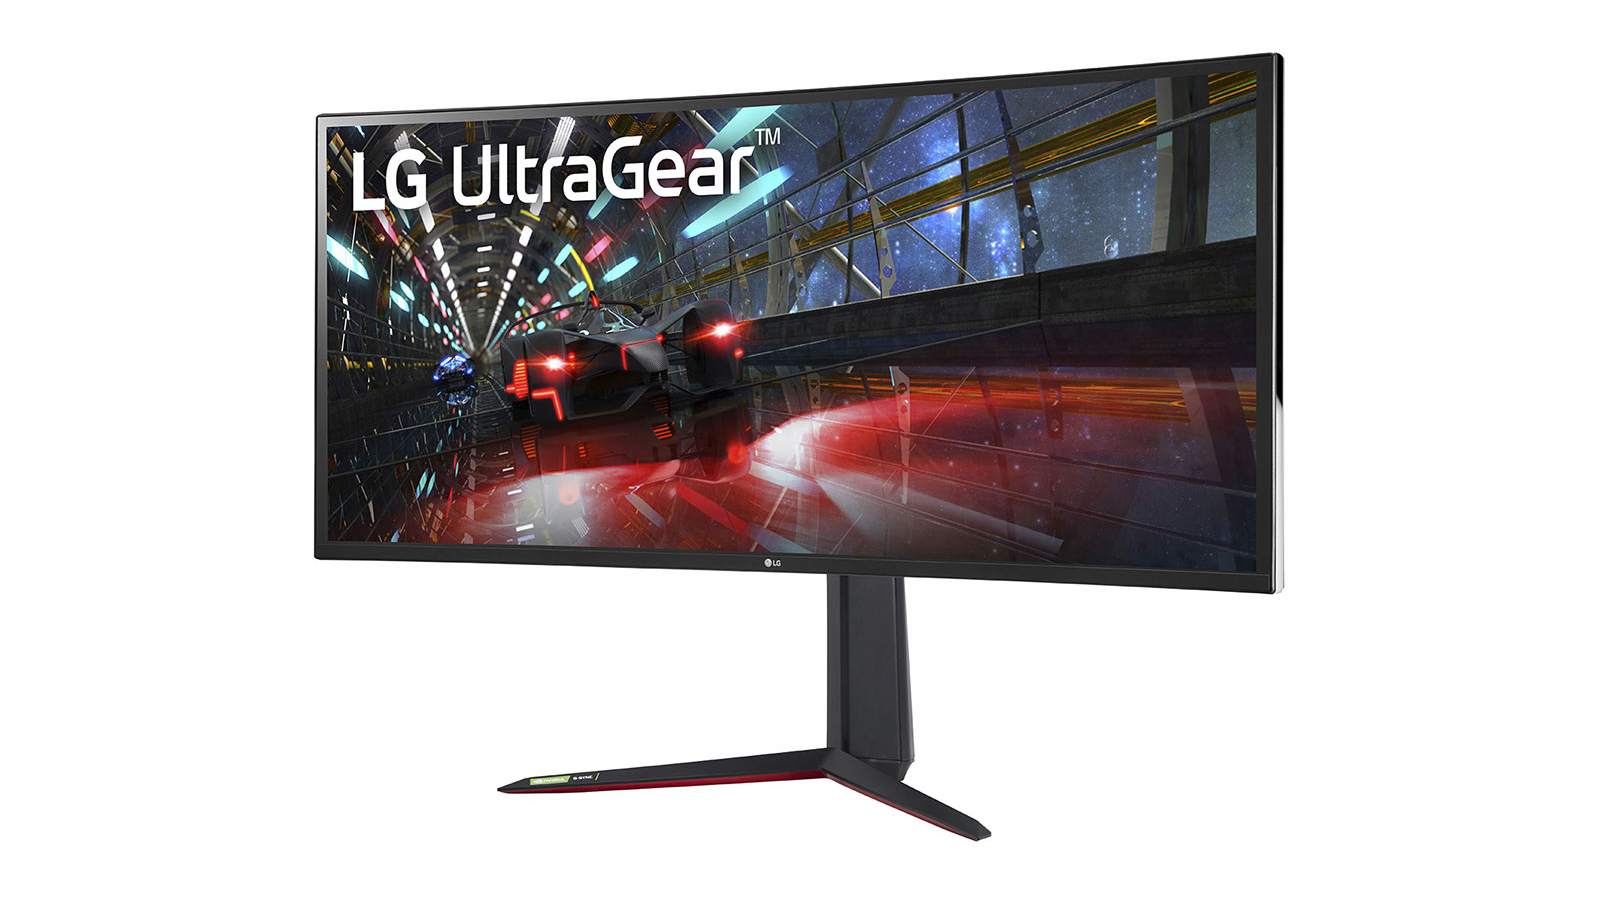 The LG UltraGear 38GN950 is ultra-wide.